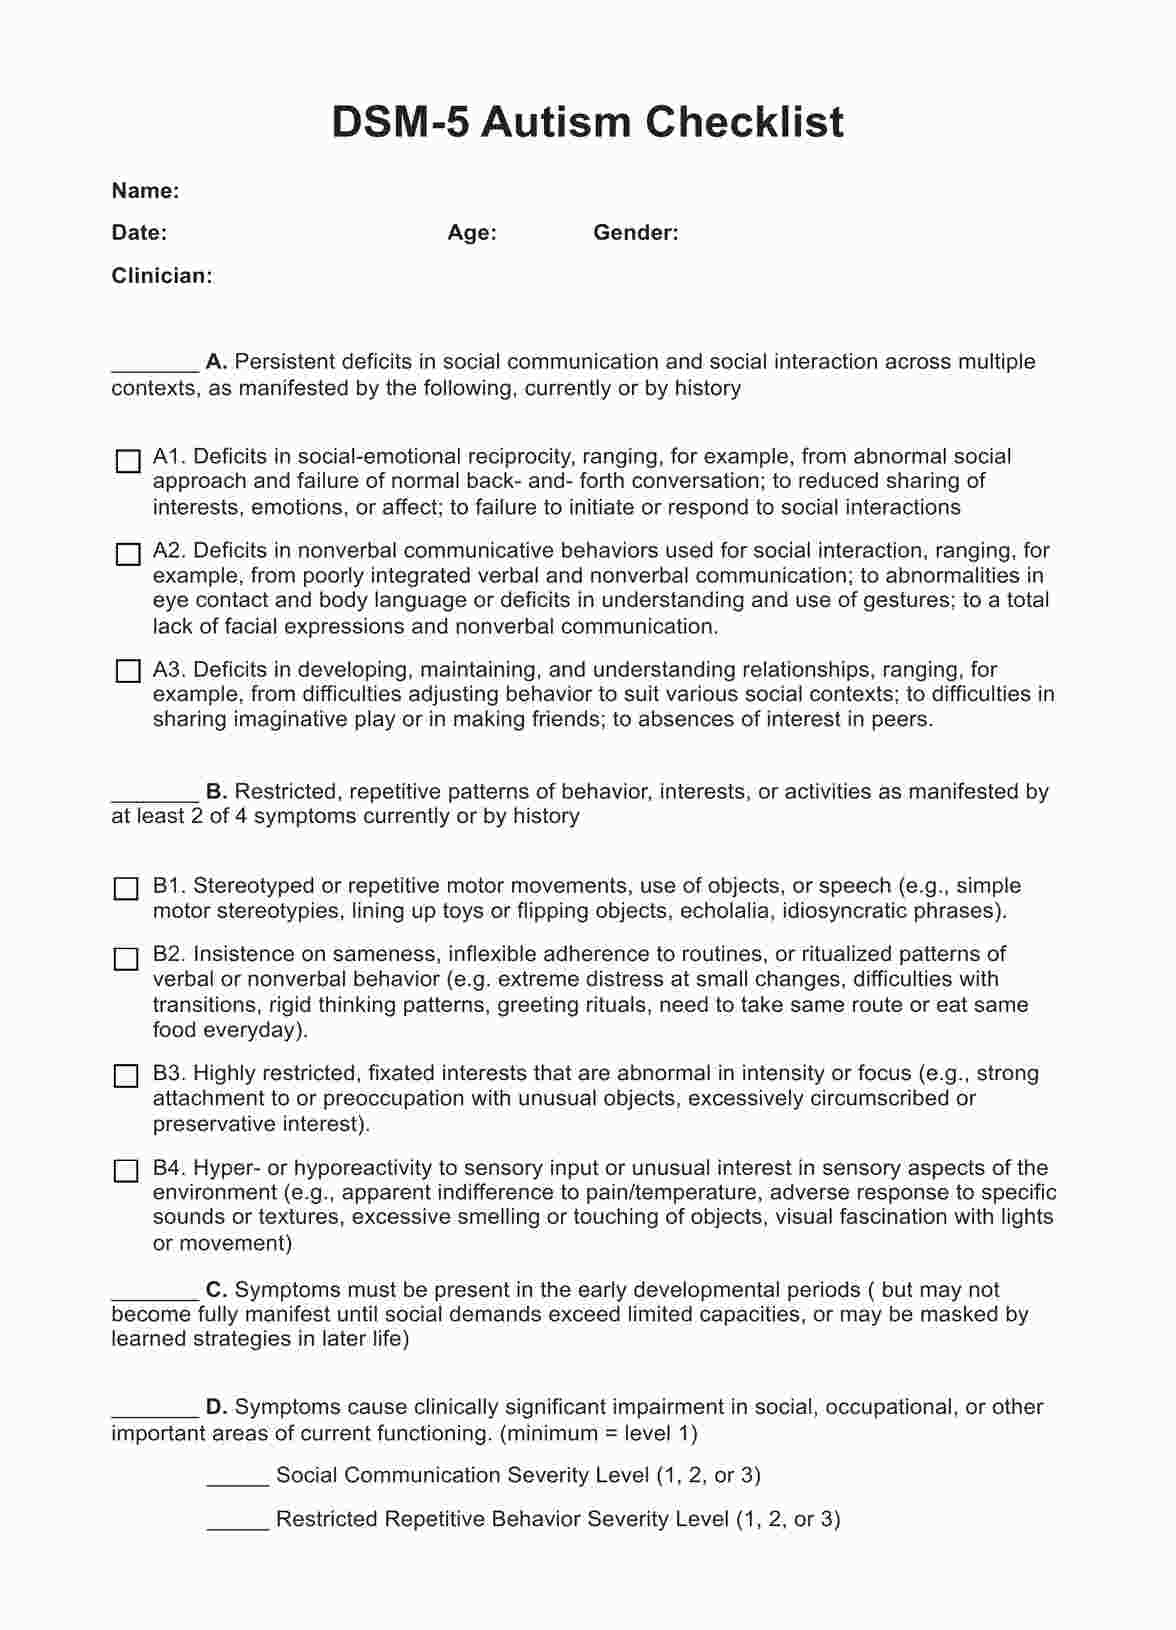 DSM 5 Autism Criteria Checklist PDF Example